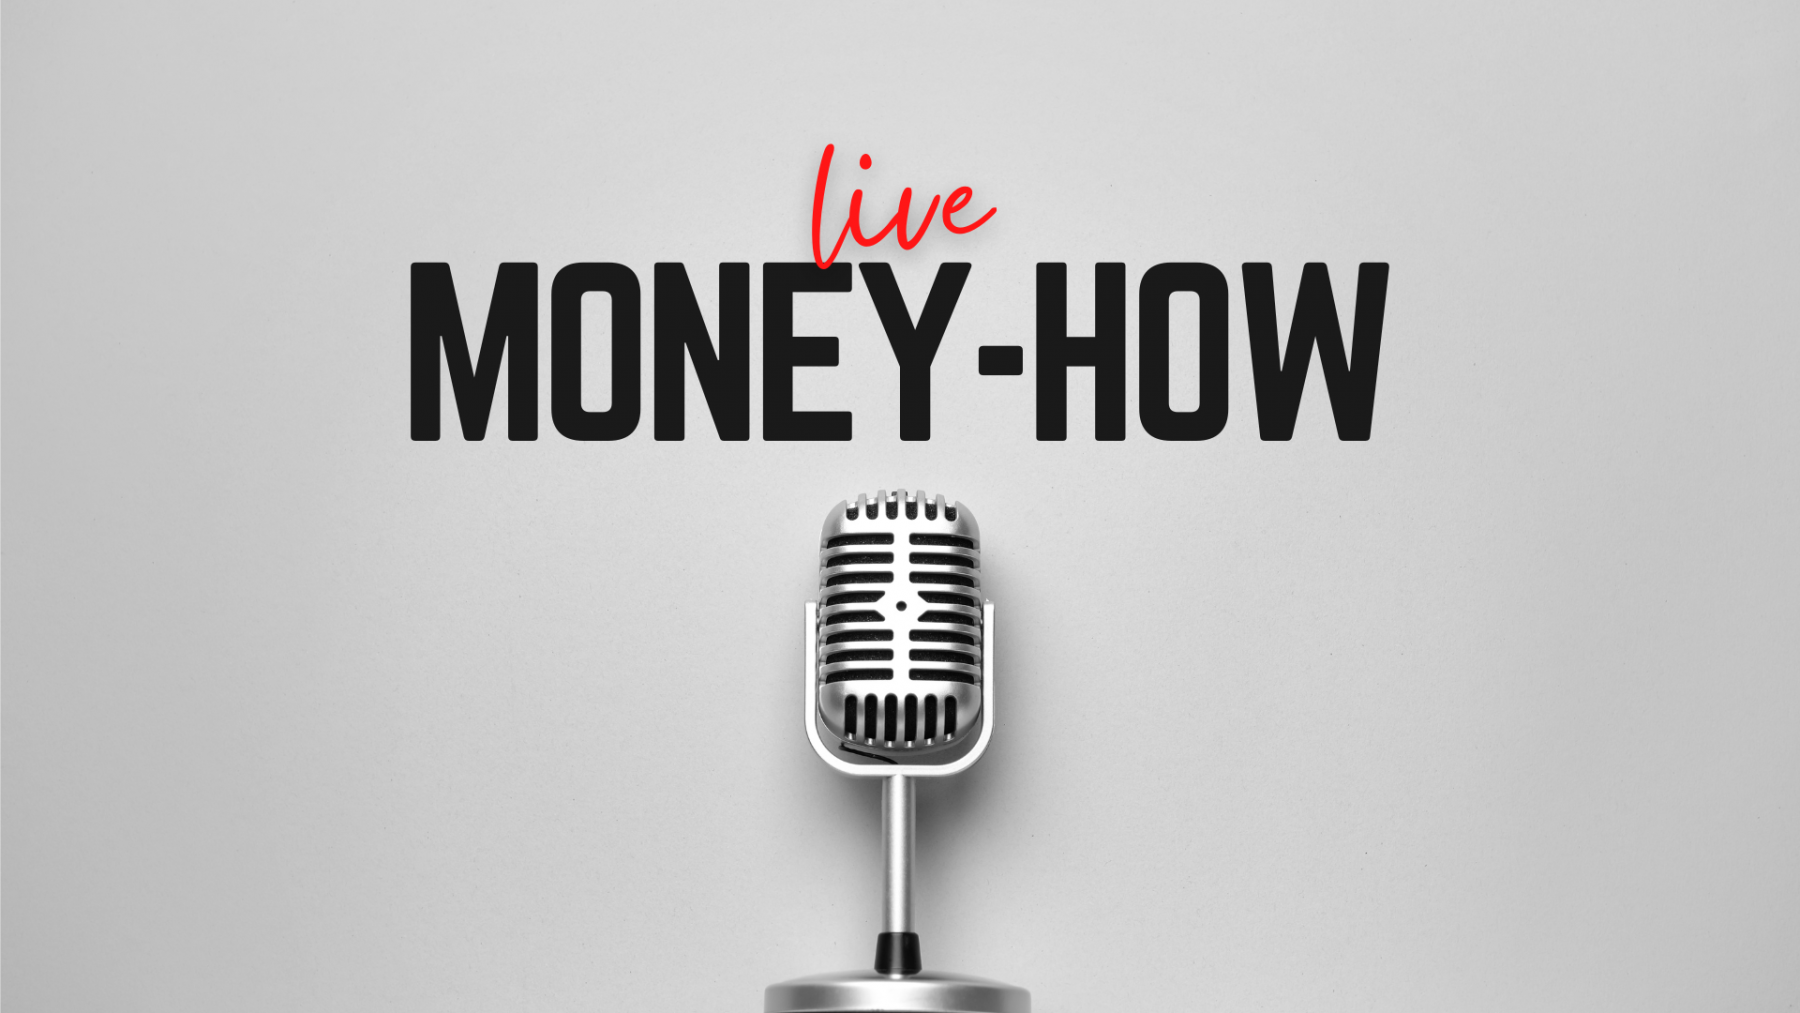 Money-How Live (v živo)